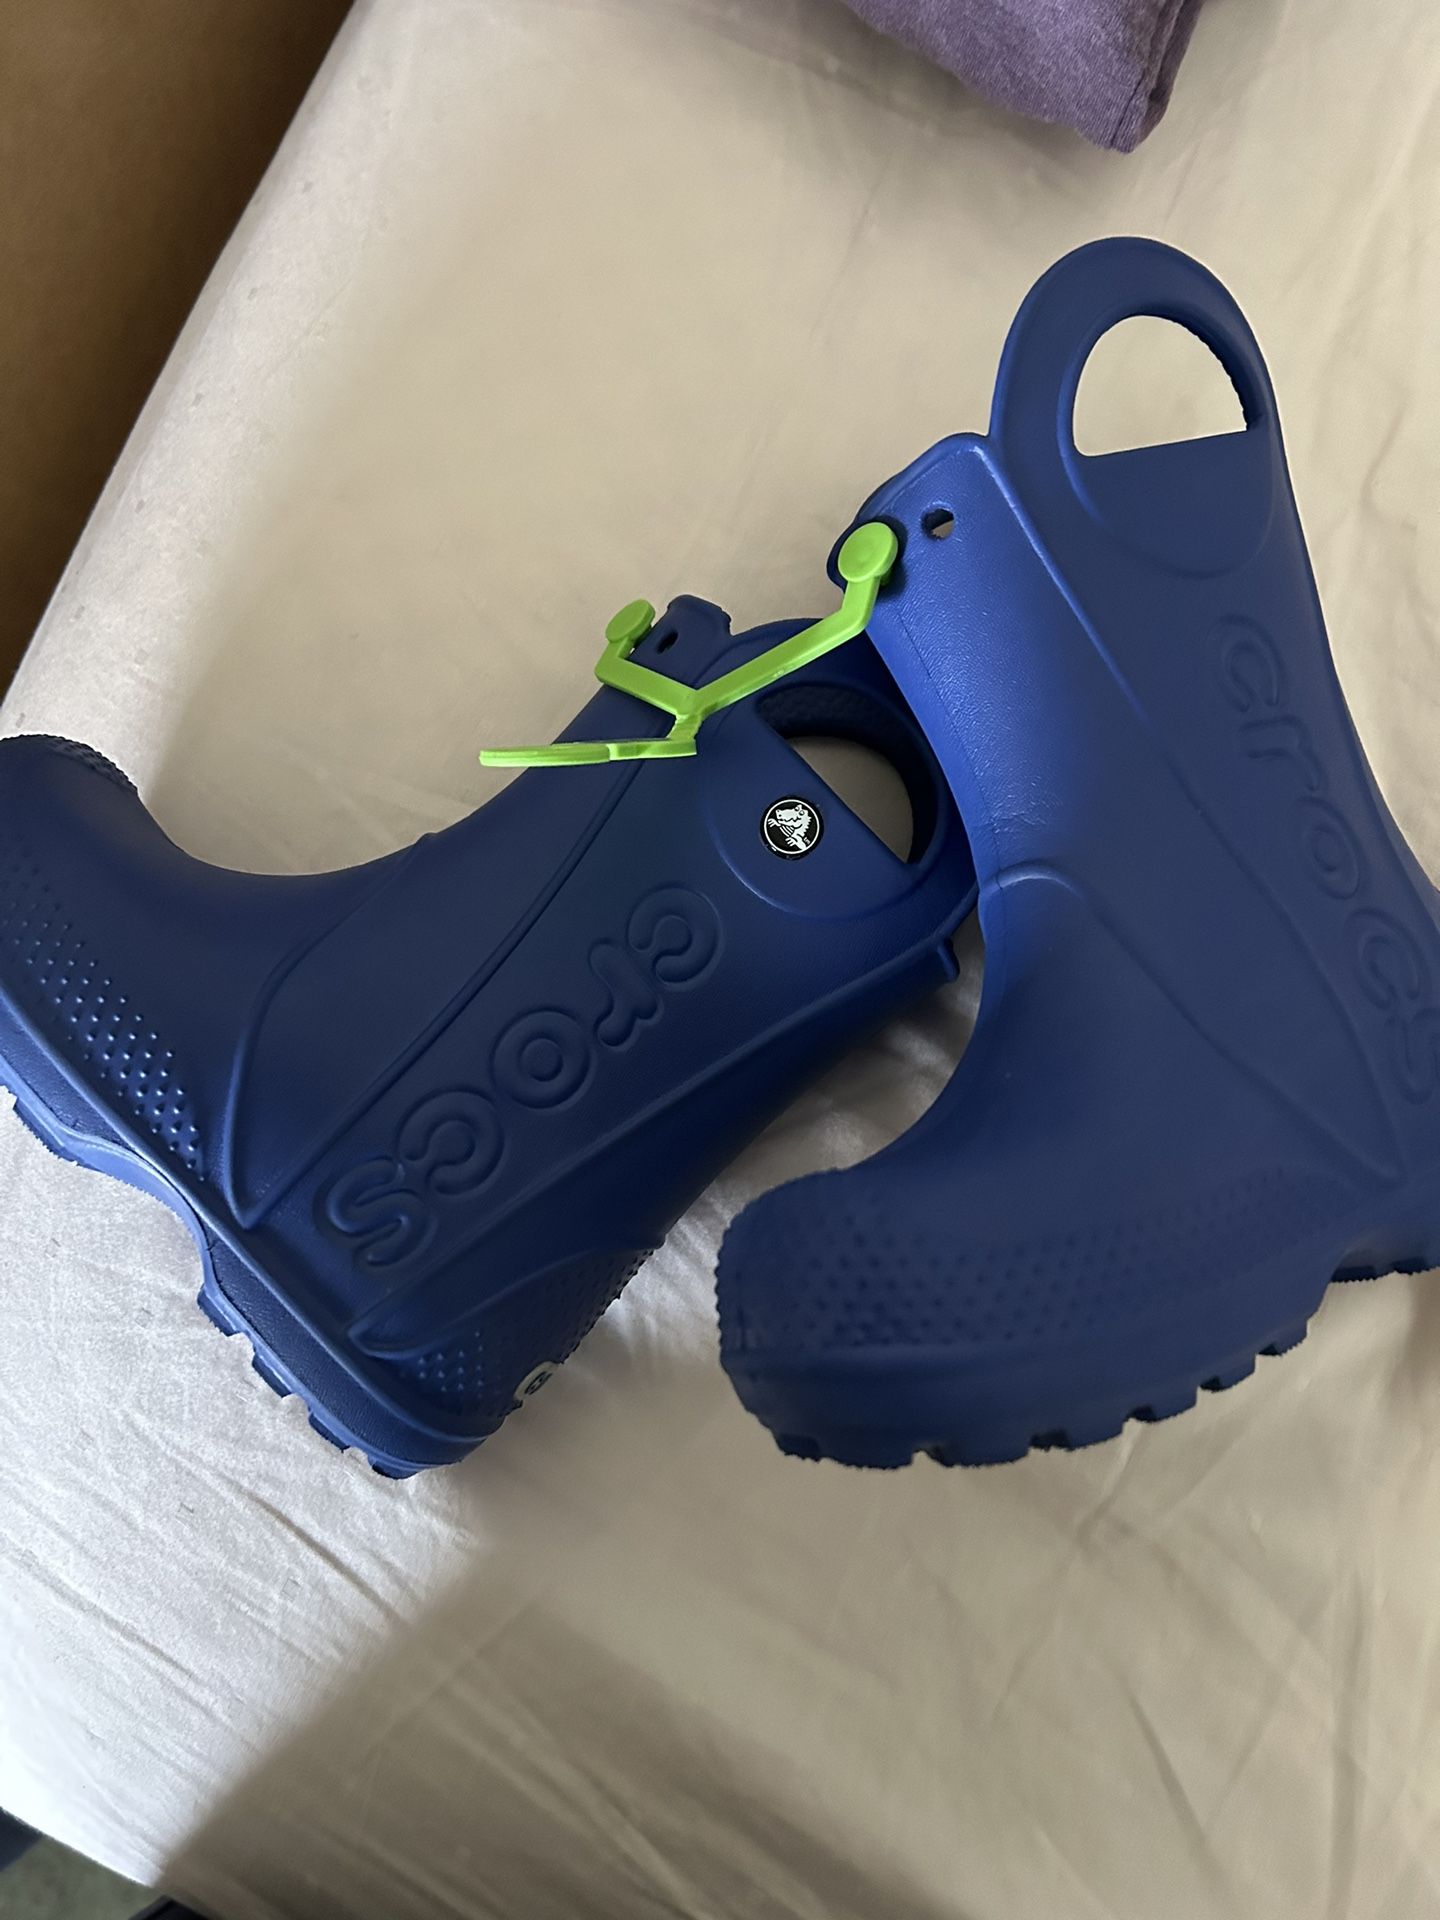 Croc Rain Boots C9 